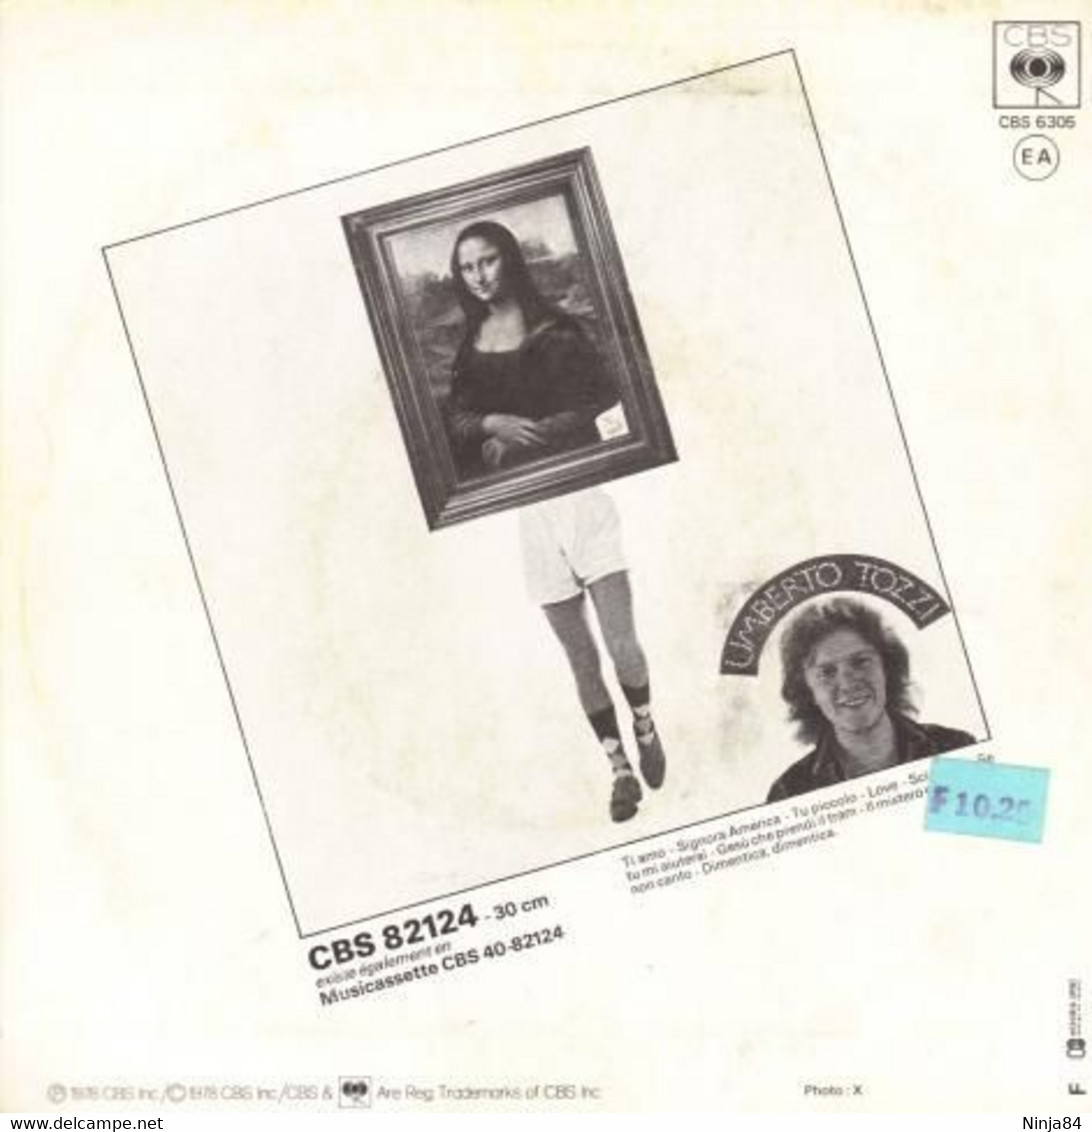 SP 45 RPM (7")  Umberto Tozzi  "  Tu  " - Sonstige - Italienische Musik